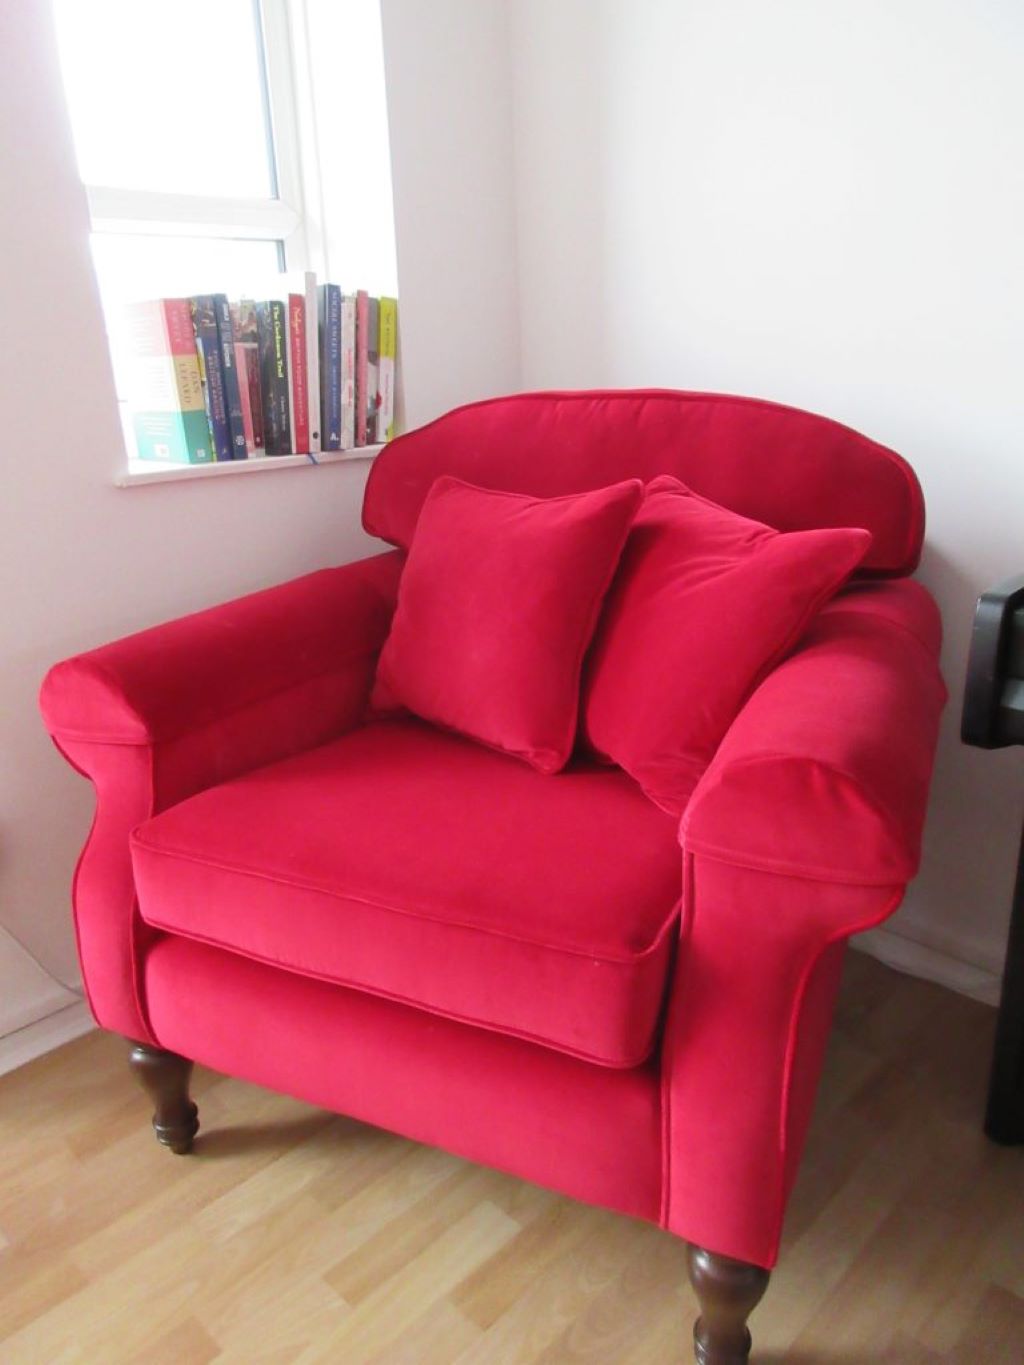 Sofa Frame London upholsterer, Hill Upholstery and Design (1)